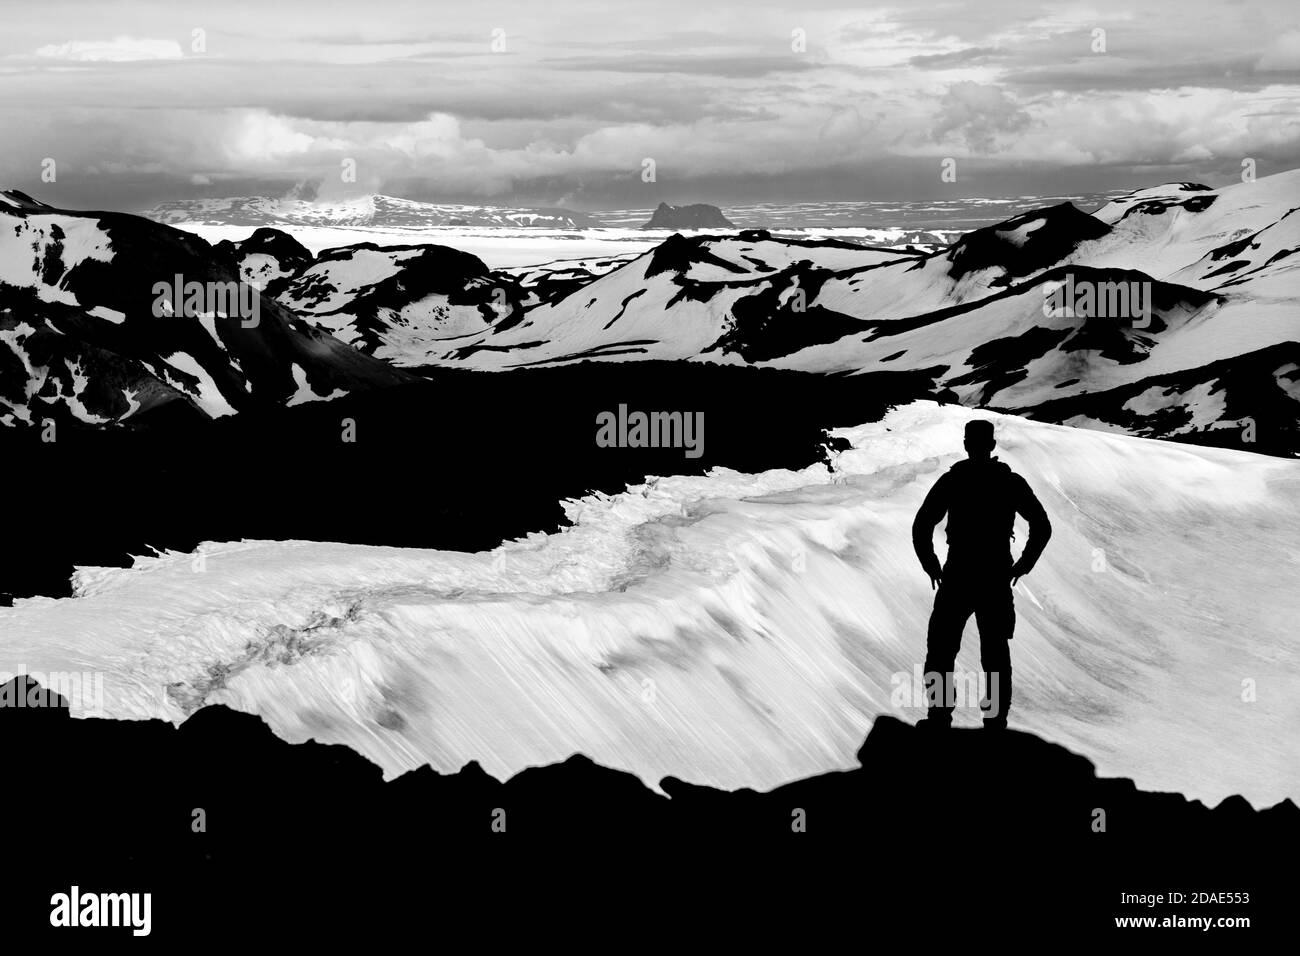 Hiker Man Silhouette bénéficiant d'une vue depuis le cratère d'OK Vulcano jusqu'aux montagnes enneigées de Thorisdalur. Monochrome, noir et blanc, Islande. Banque D'Images